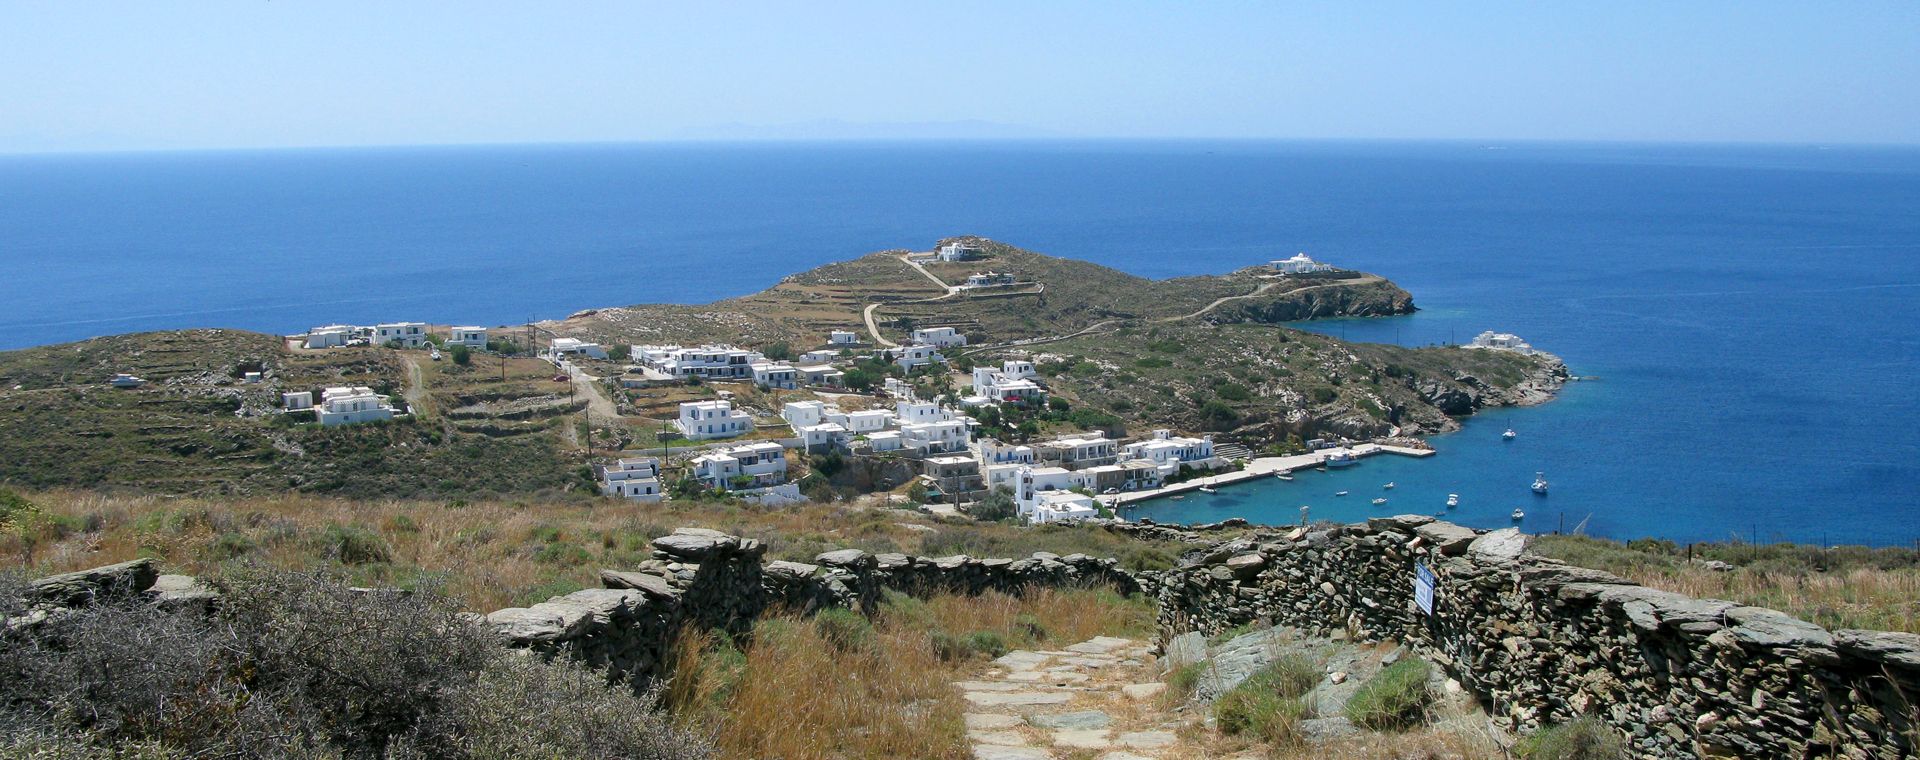 Village balnéaire de Faros sur l'île de Sifnos